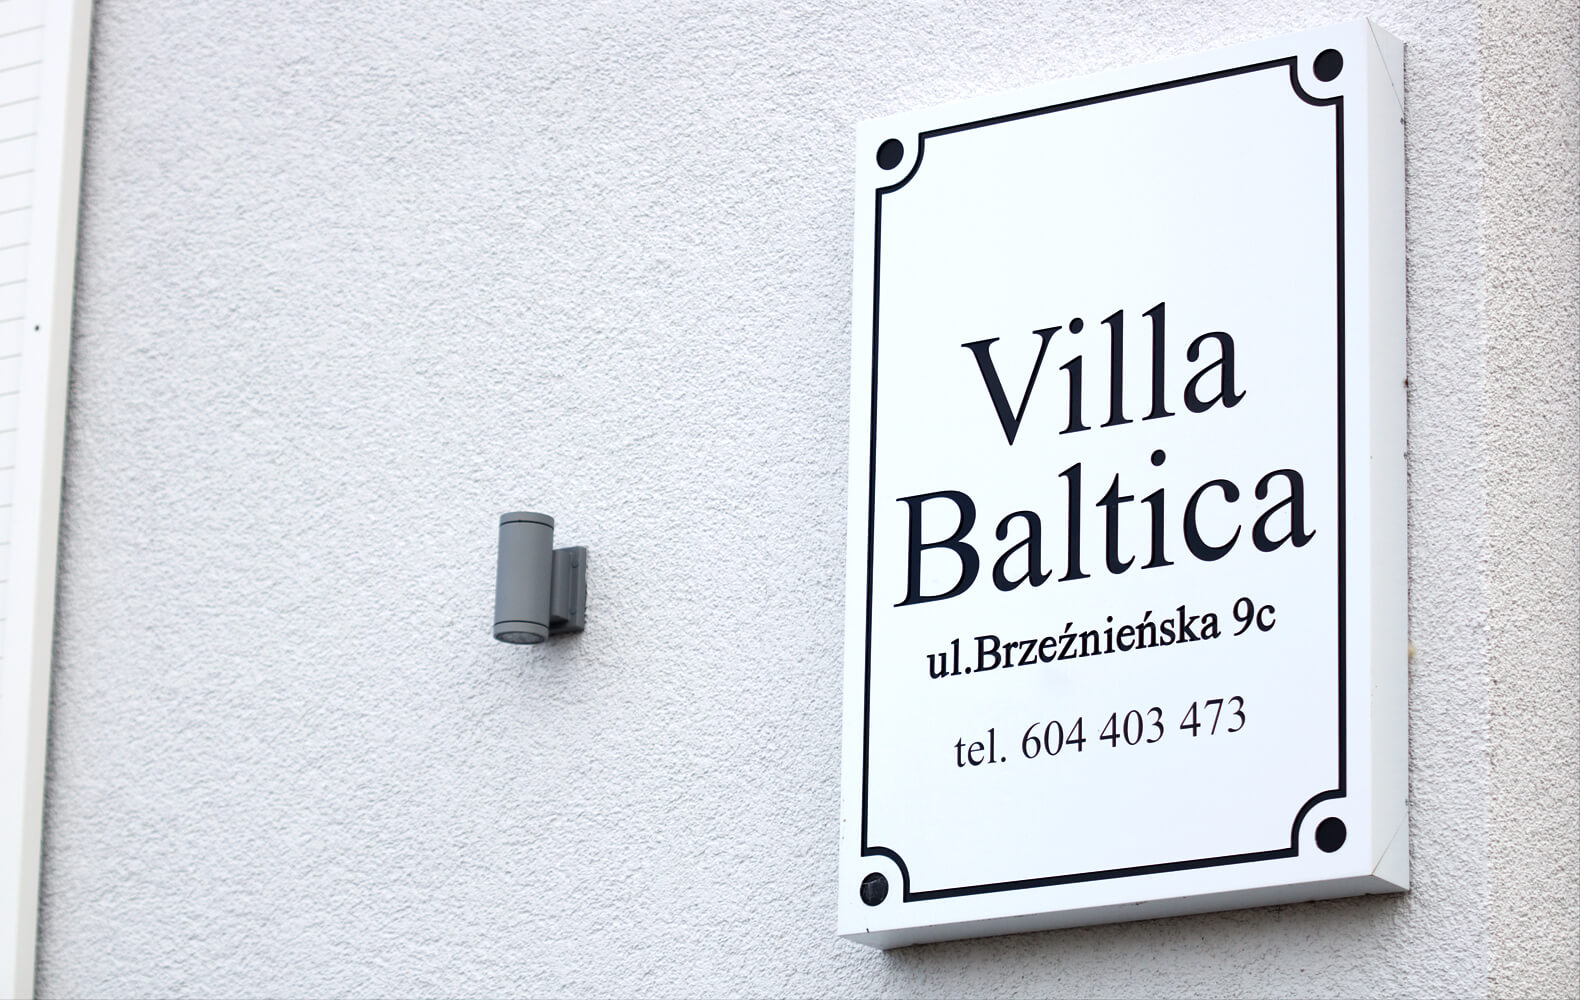 Villa Báltica - Villa Baltica - cartel de la empresa en un cofre de dibond en blanco mate